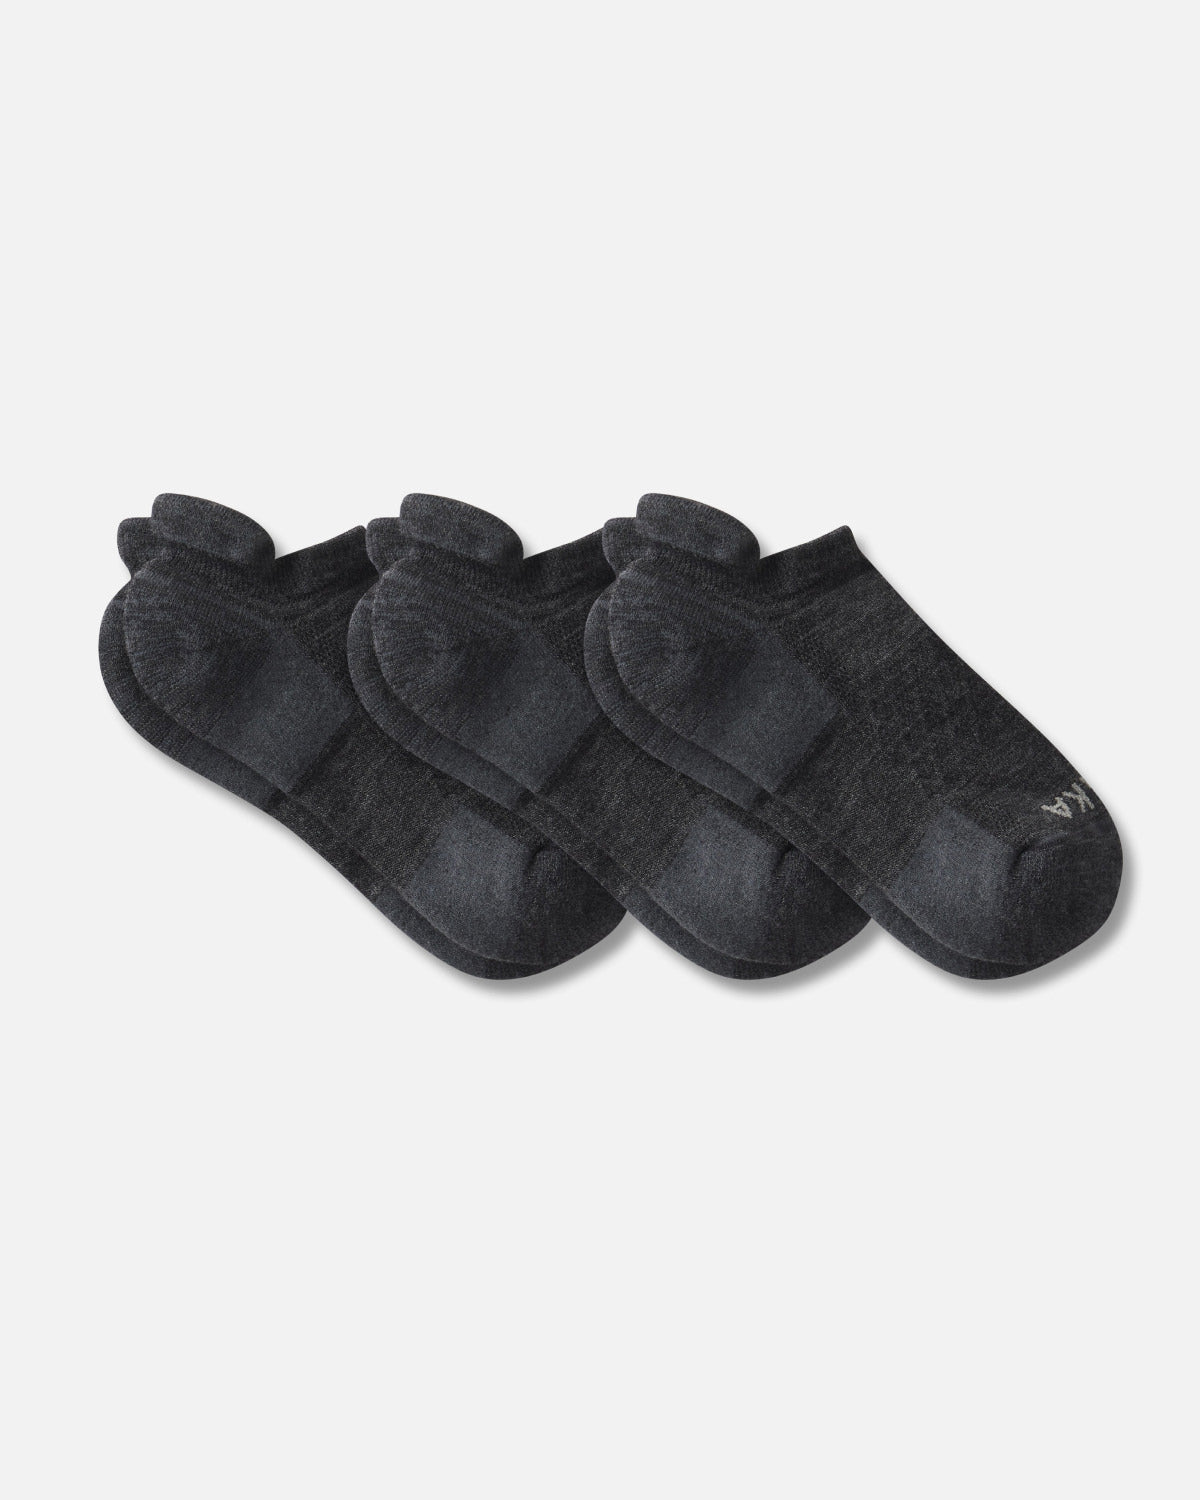 3 pairs of dark grey alpaca ankle socks 